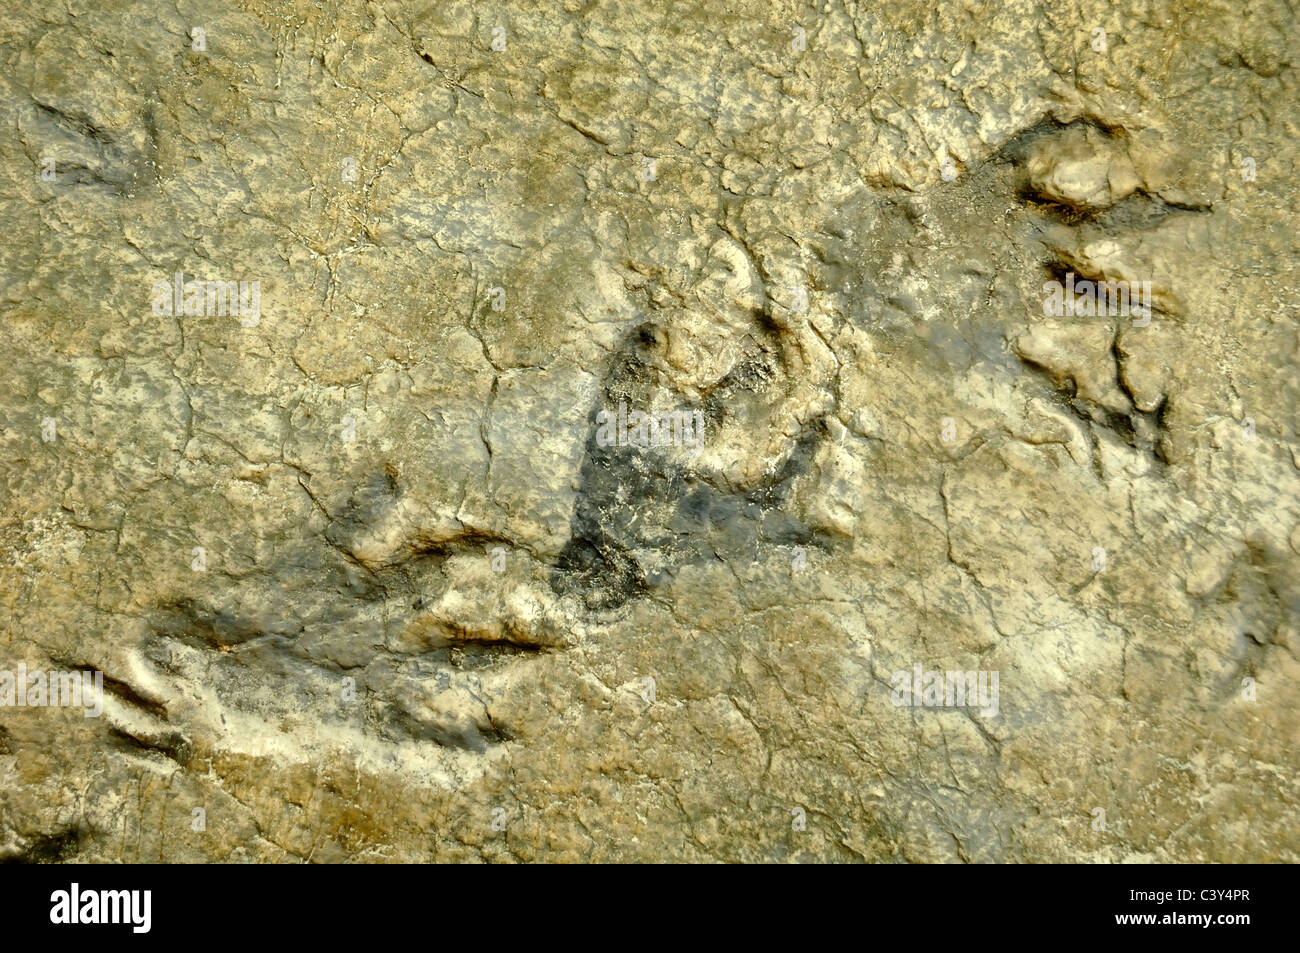 Plateosaurus empreintes fossilisées de dinosaures, l'empreinte ou de morceaux de la France Département Gard Banque D'Images